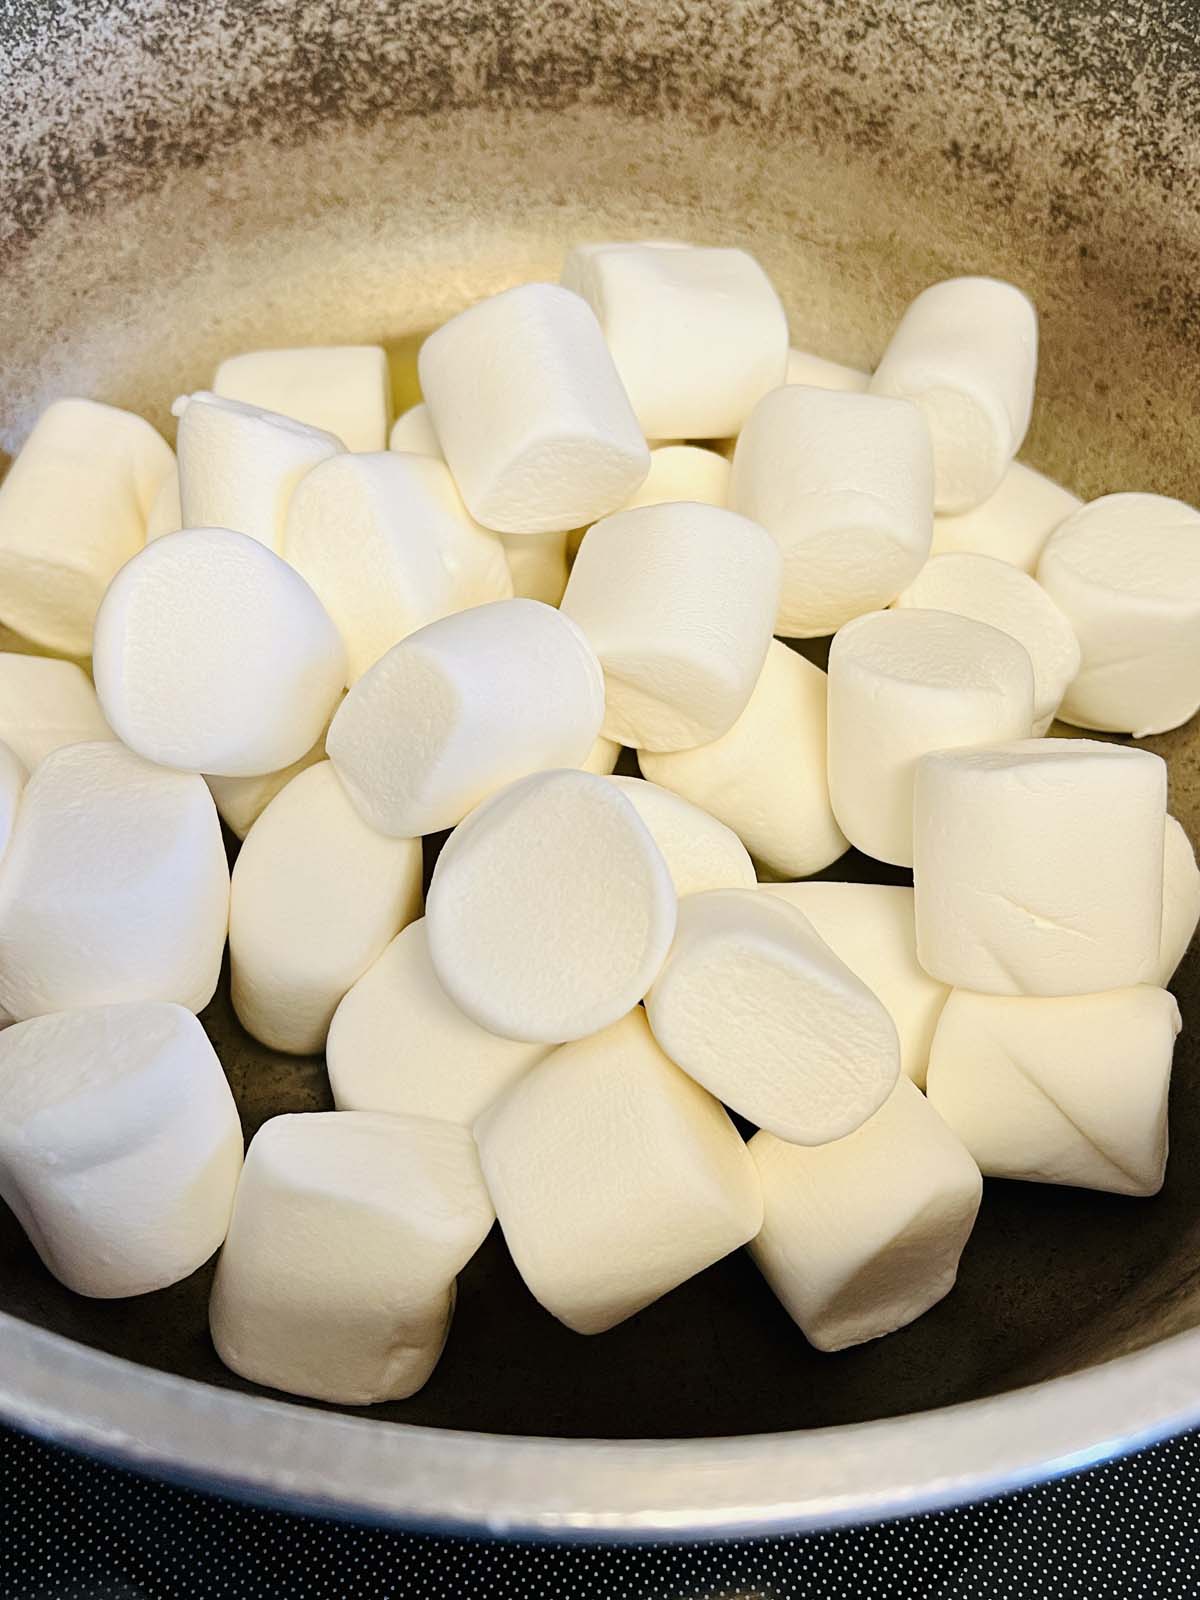 Marshmallows in a pot.